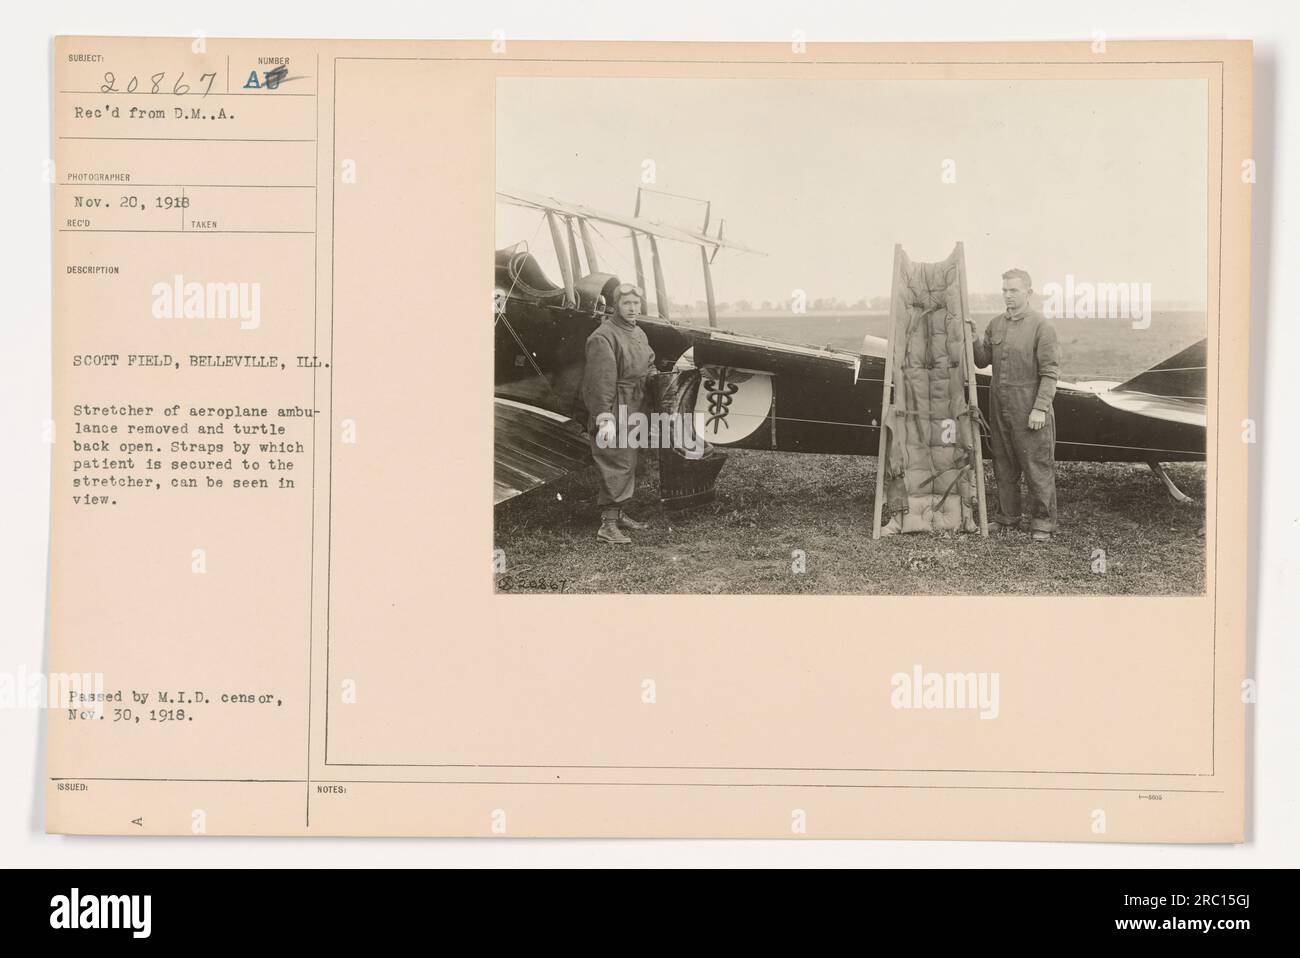 Immagine di una veduta aerea di un'ambulanza di aeroplano modificata a Scott Field, Belleville, Illinois durante la prima guerra mondiale. La barella è stata rimossa e la parte posteriore della tartaruga dell'aereo è aperta. Le cinghie utilizzate per fissare i pazienti alla barella sono visibili. Approvato dal M.I.D. censor il 30 novembre 1918. Foto Stock